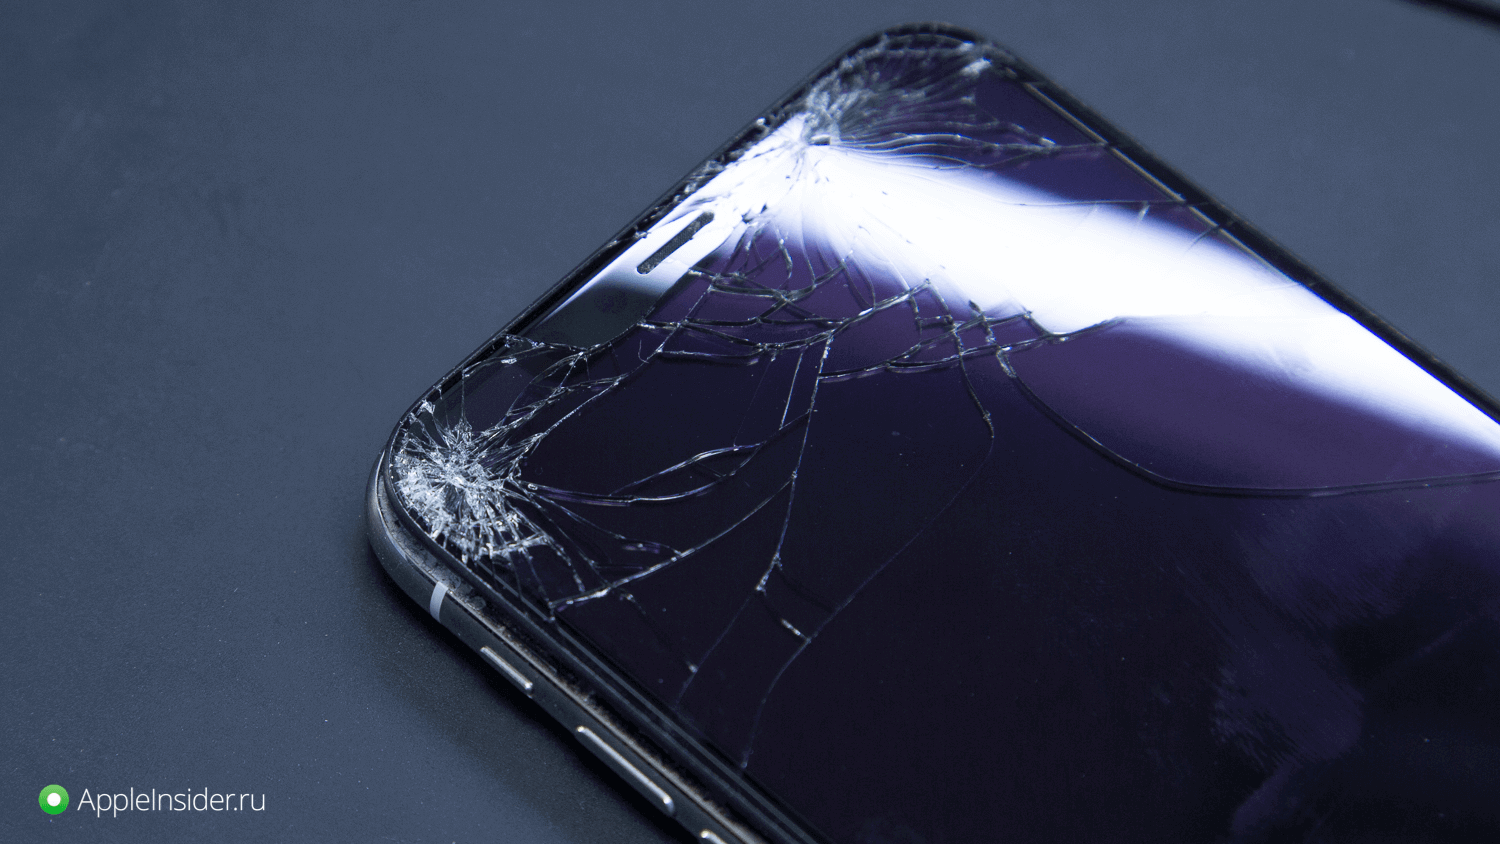 Что делать со сломанным iPhone? Отремонтировать или купить новый?